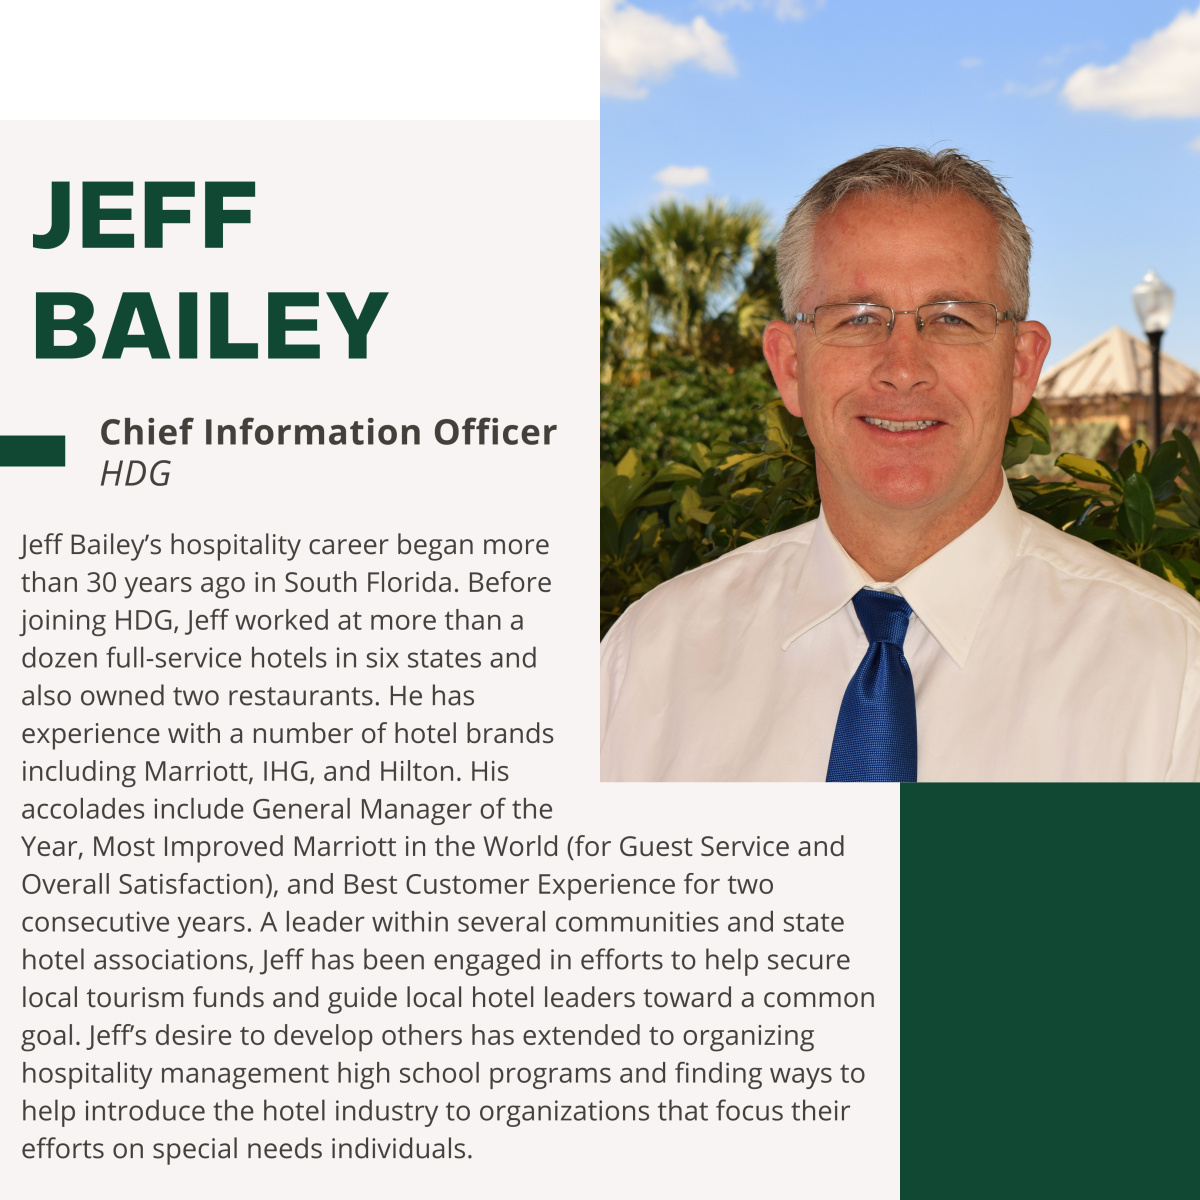 Jeff Bailey